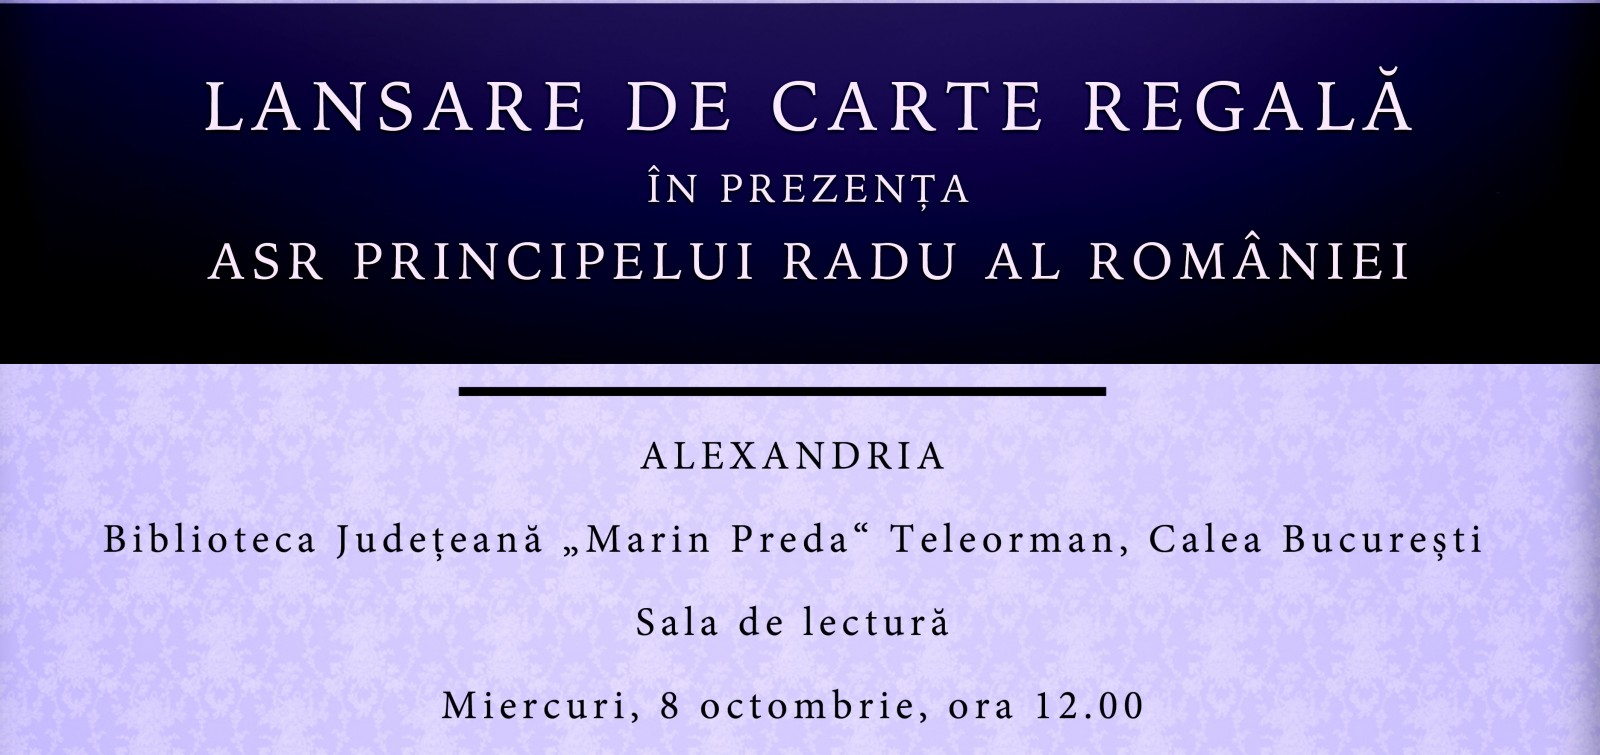 ASR Principele Radu al României, lansare de carte regală în Alexandria